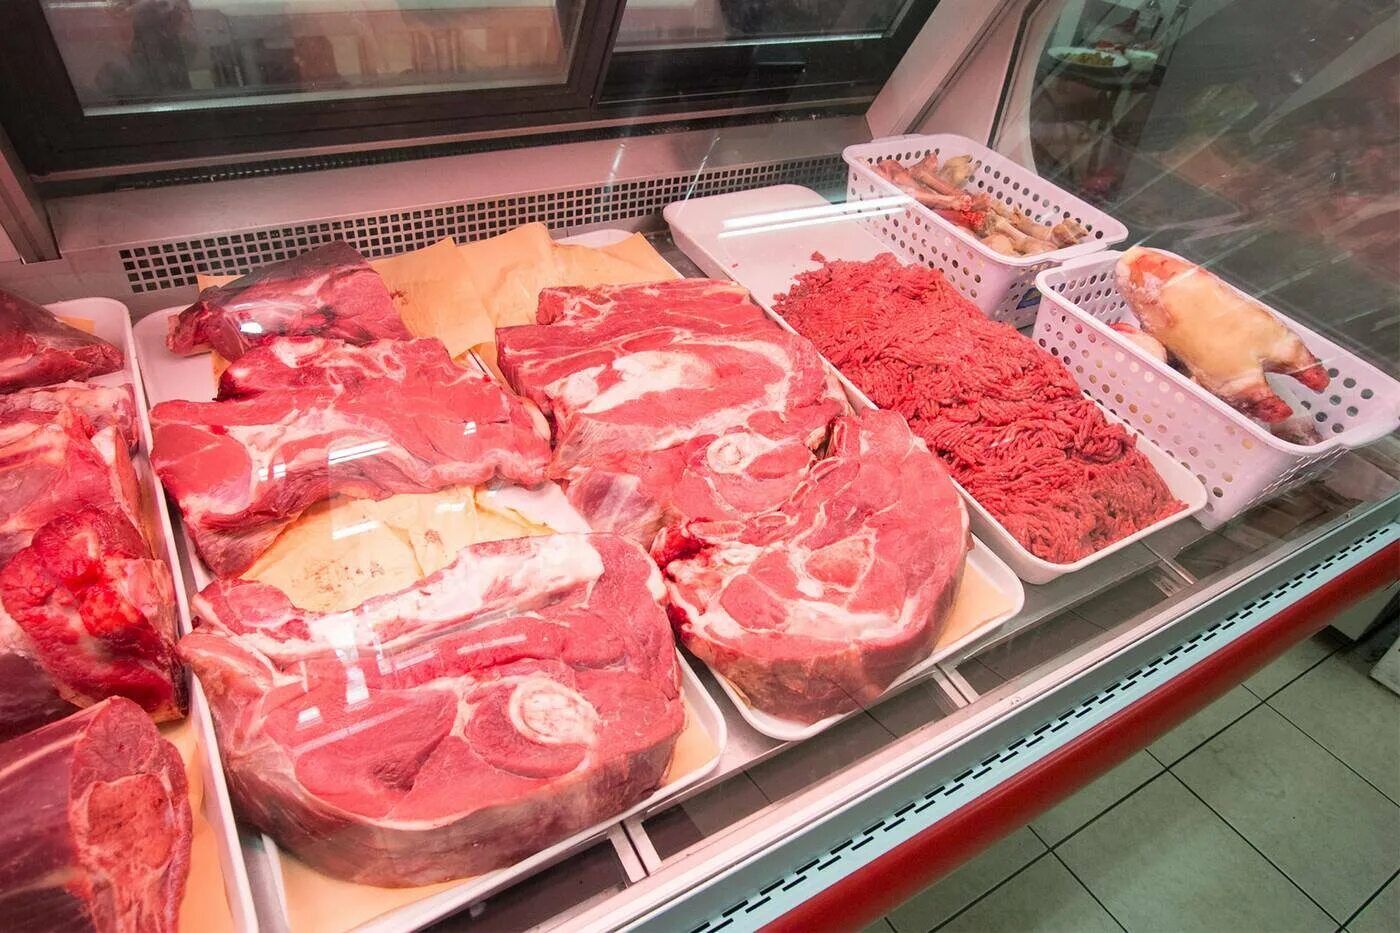 Халяль мясо доставка. Мясо в Costco. Мясо Халяль. Ветеринарный надзор мяса в Японии. Центральный рынок Новосибирск мясо Халяль.